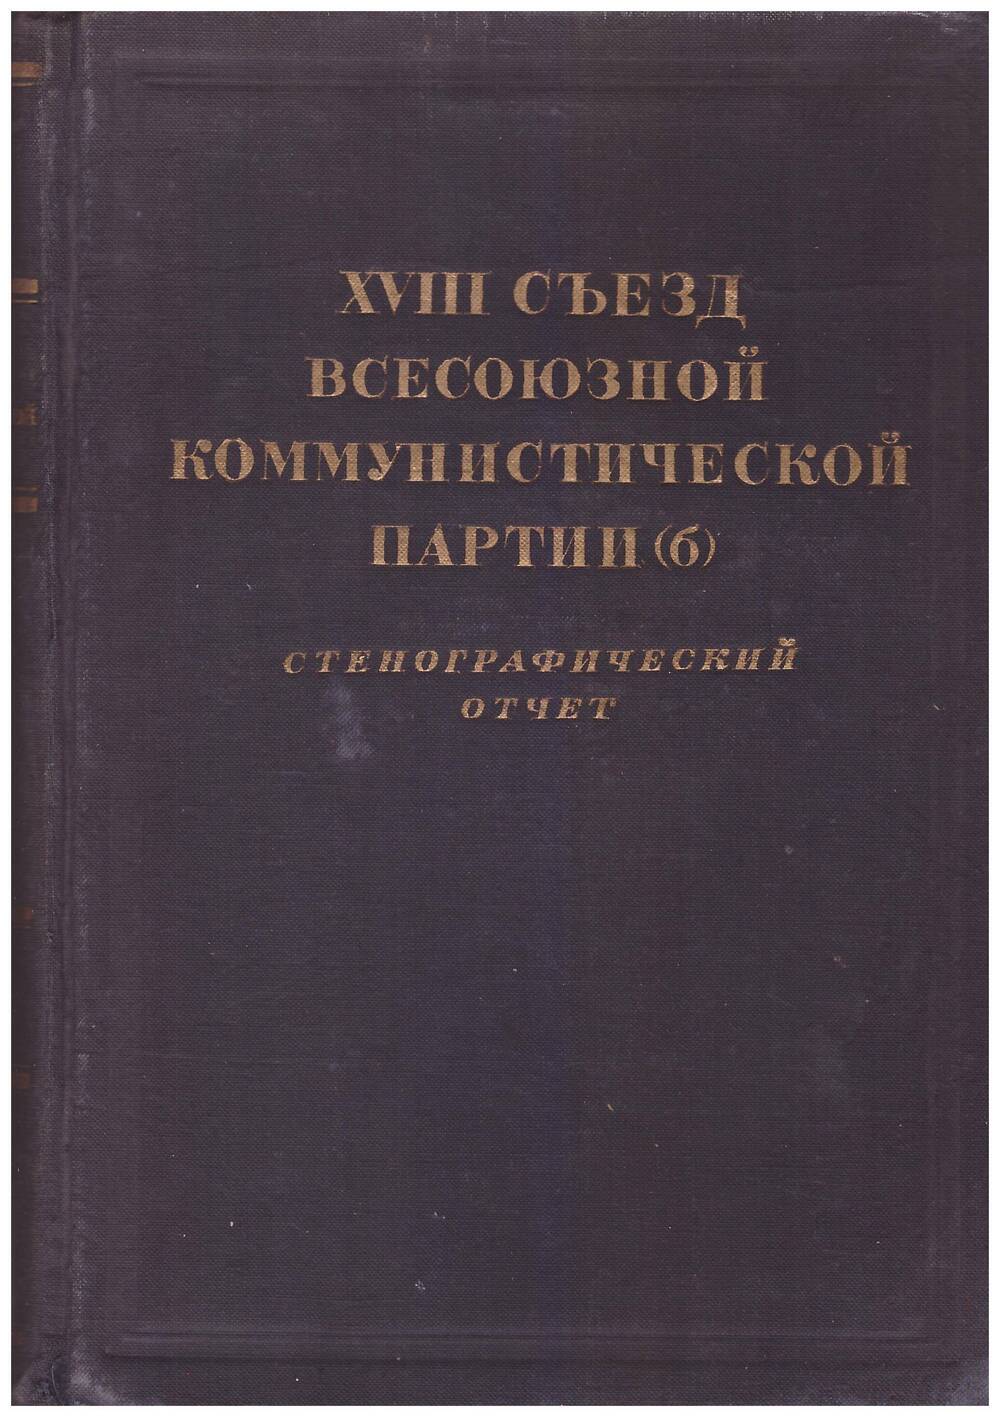 книга XVIII съезд всесоюзной коммунистической партии (б)